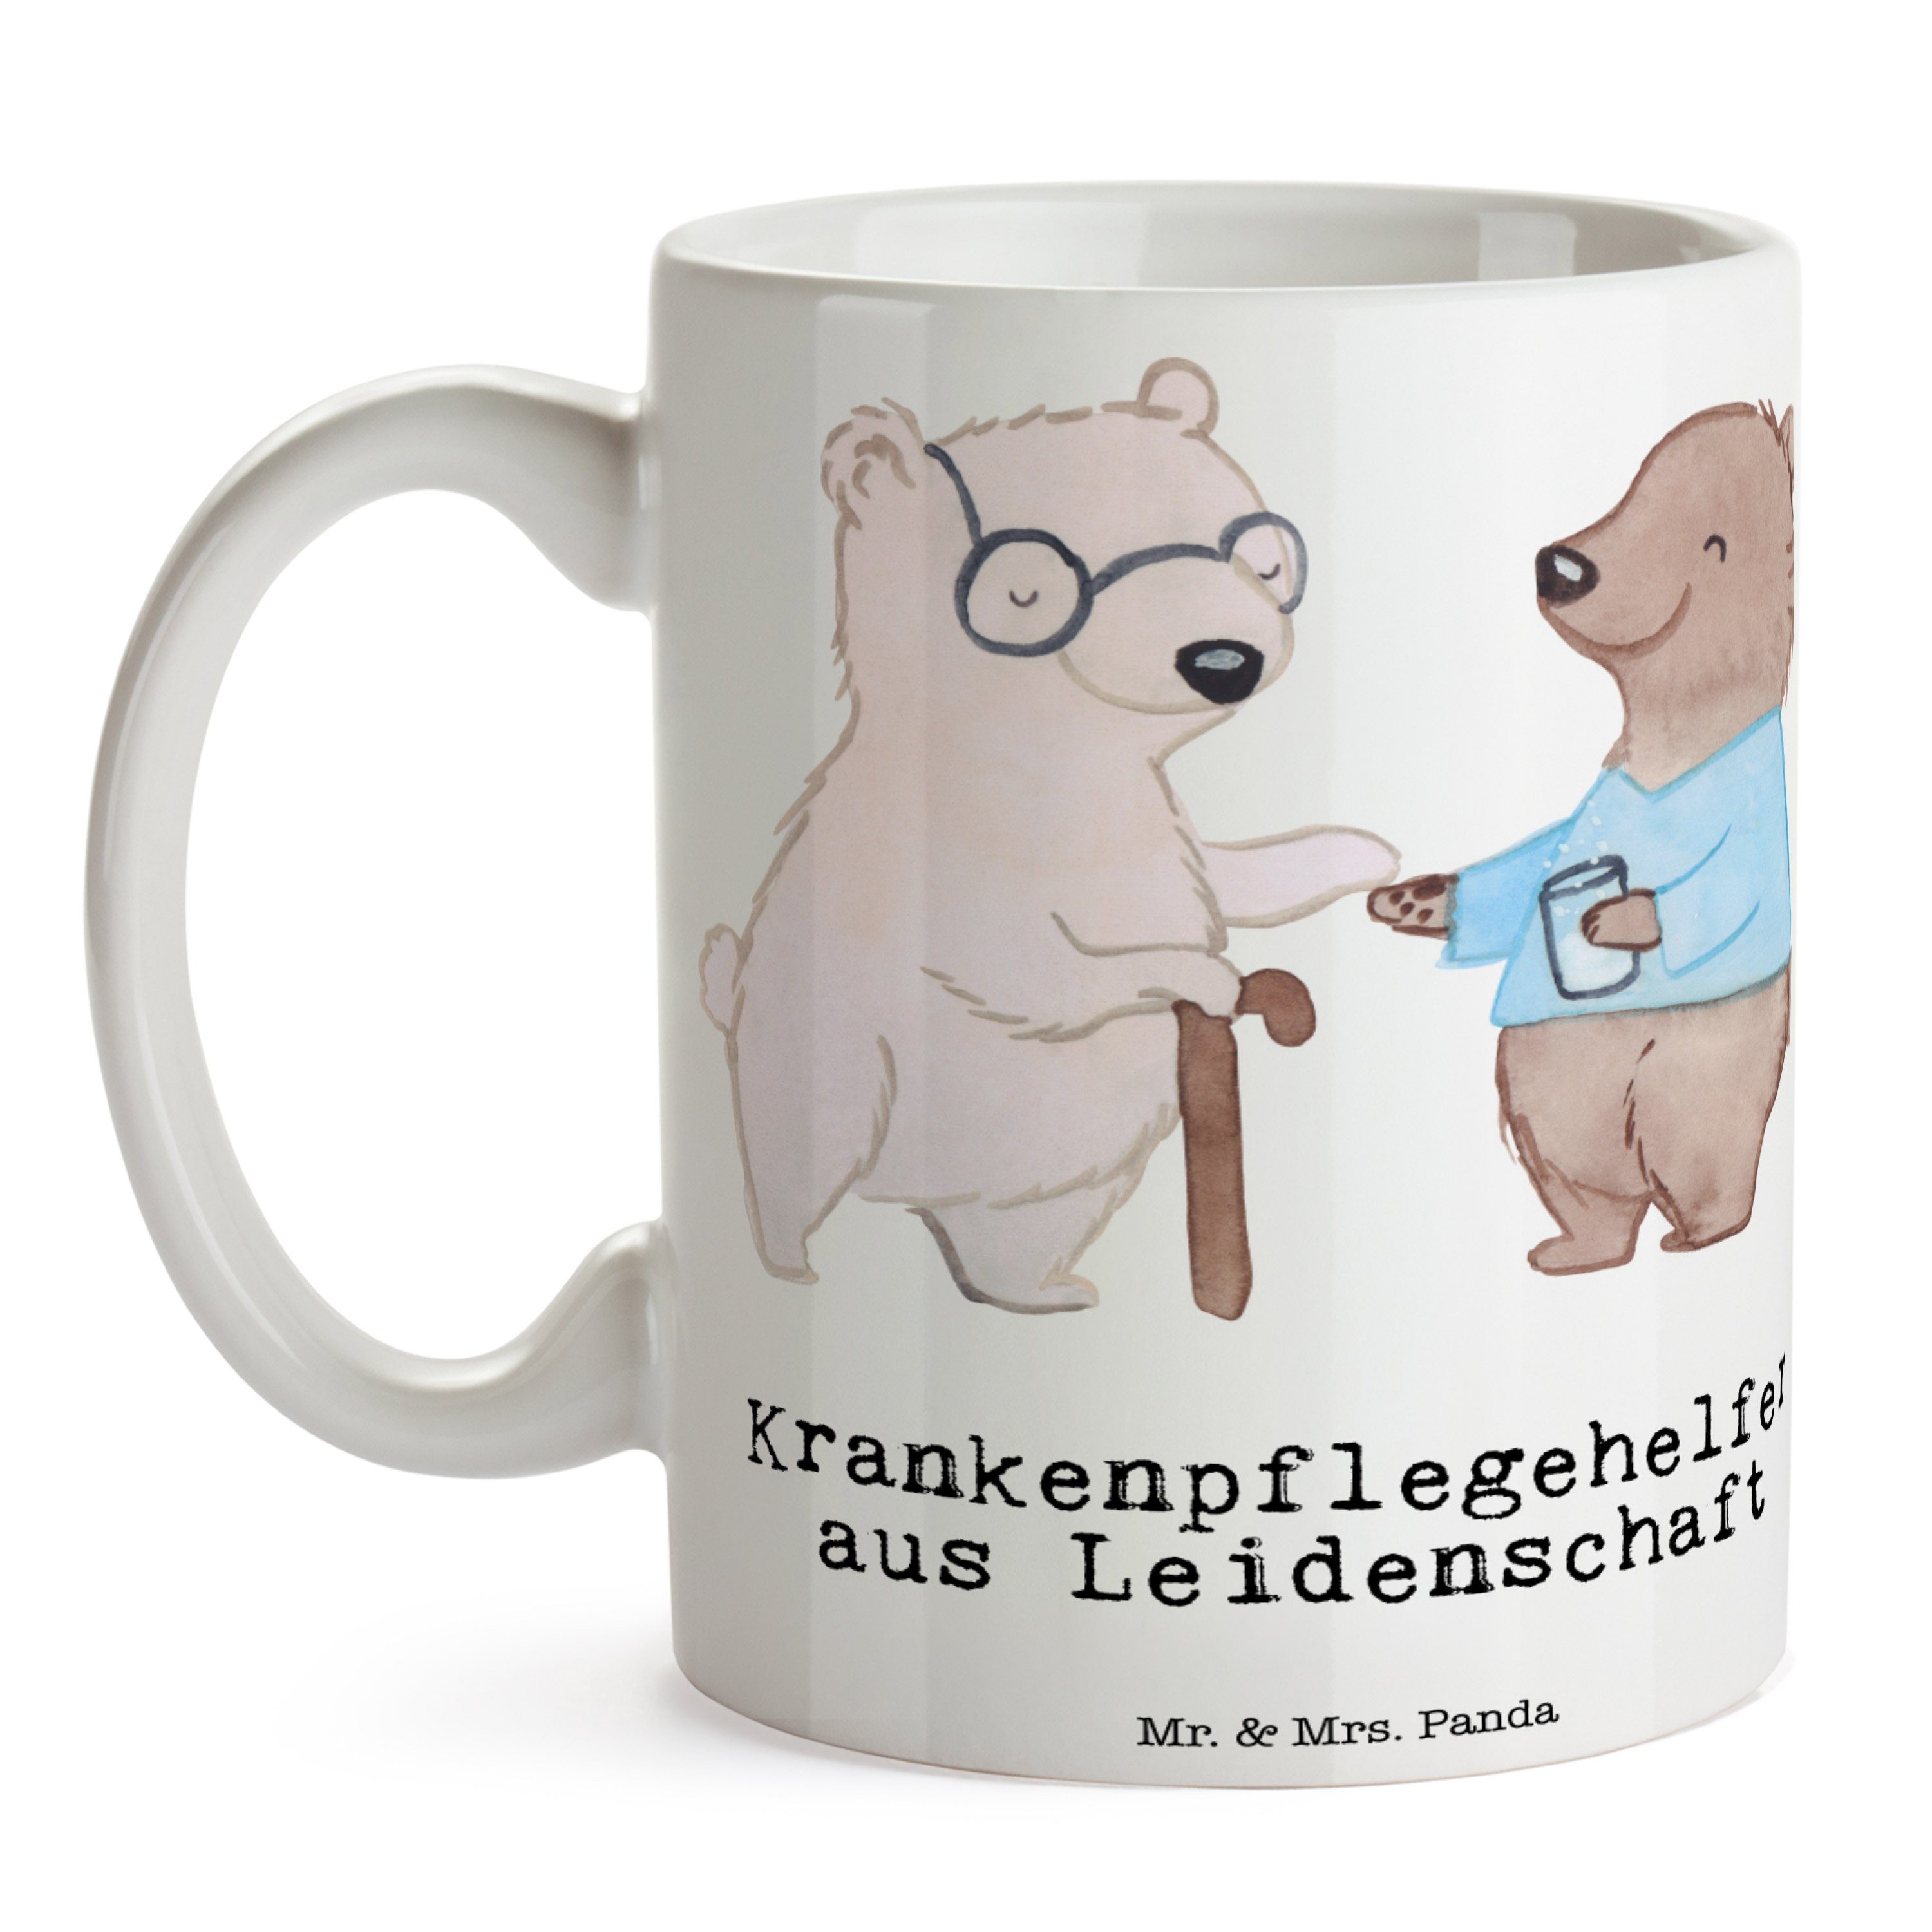 Mr. & Mrs. Panda Tasse Keramik Leidenschaft Kaffeebecher, Weiß Krankenpflegehelfer - aus Geschenk, 